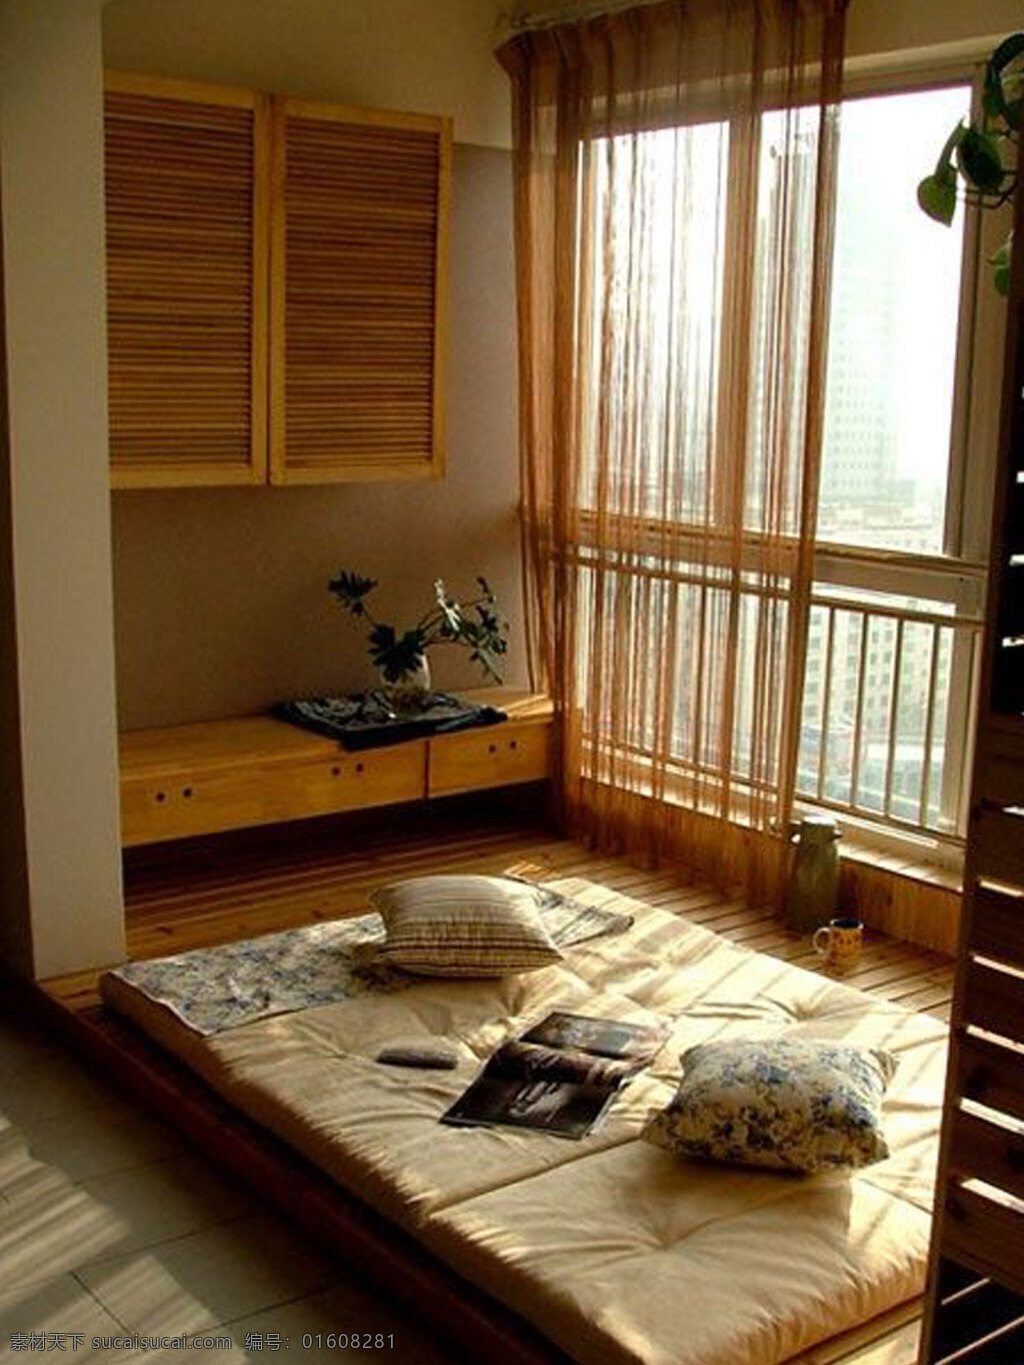 卧室 榻榻米 装修 效果图 欧式风格 卧室效果图 卧室模型 效果图图片 jpg图片